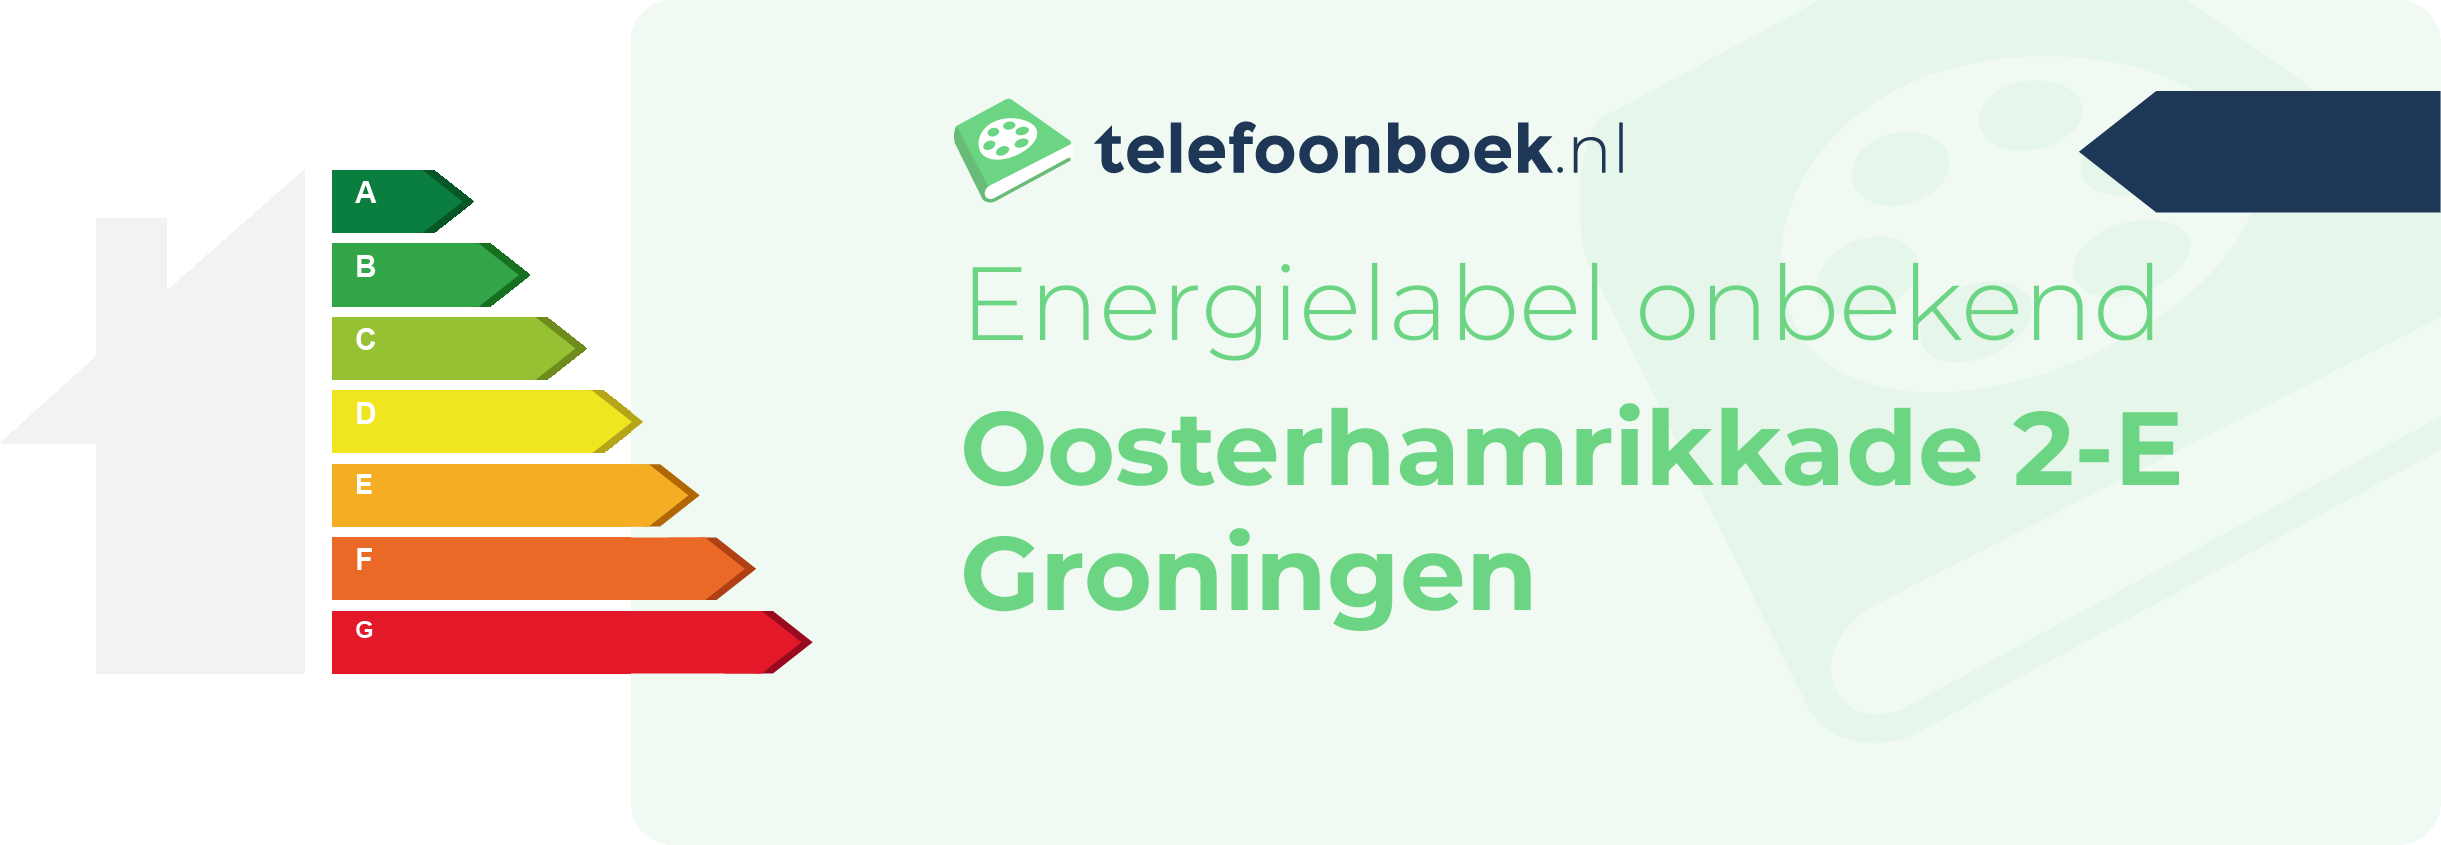 Energielabel Oosterhamrikkade 2-E Groningen